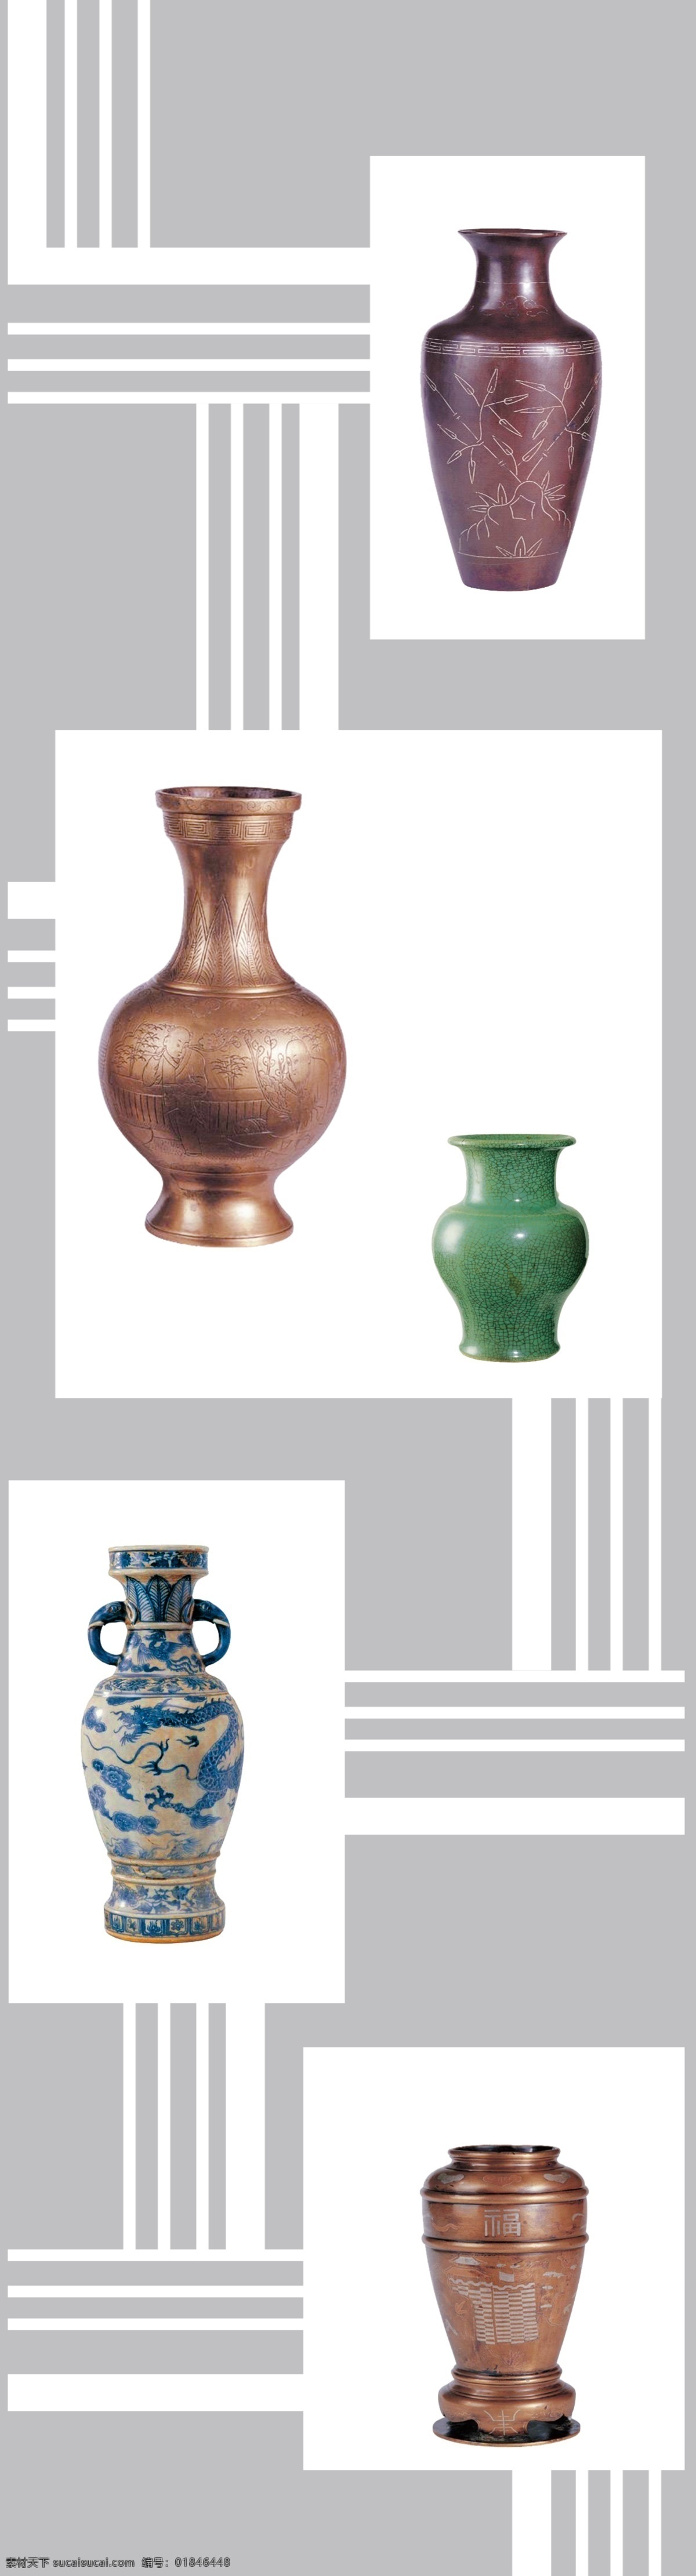 古董 花瓶 陶瓷 瓷器 线 平开门 移门 强化玻璃 移门图案 广告设计模板 源文件